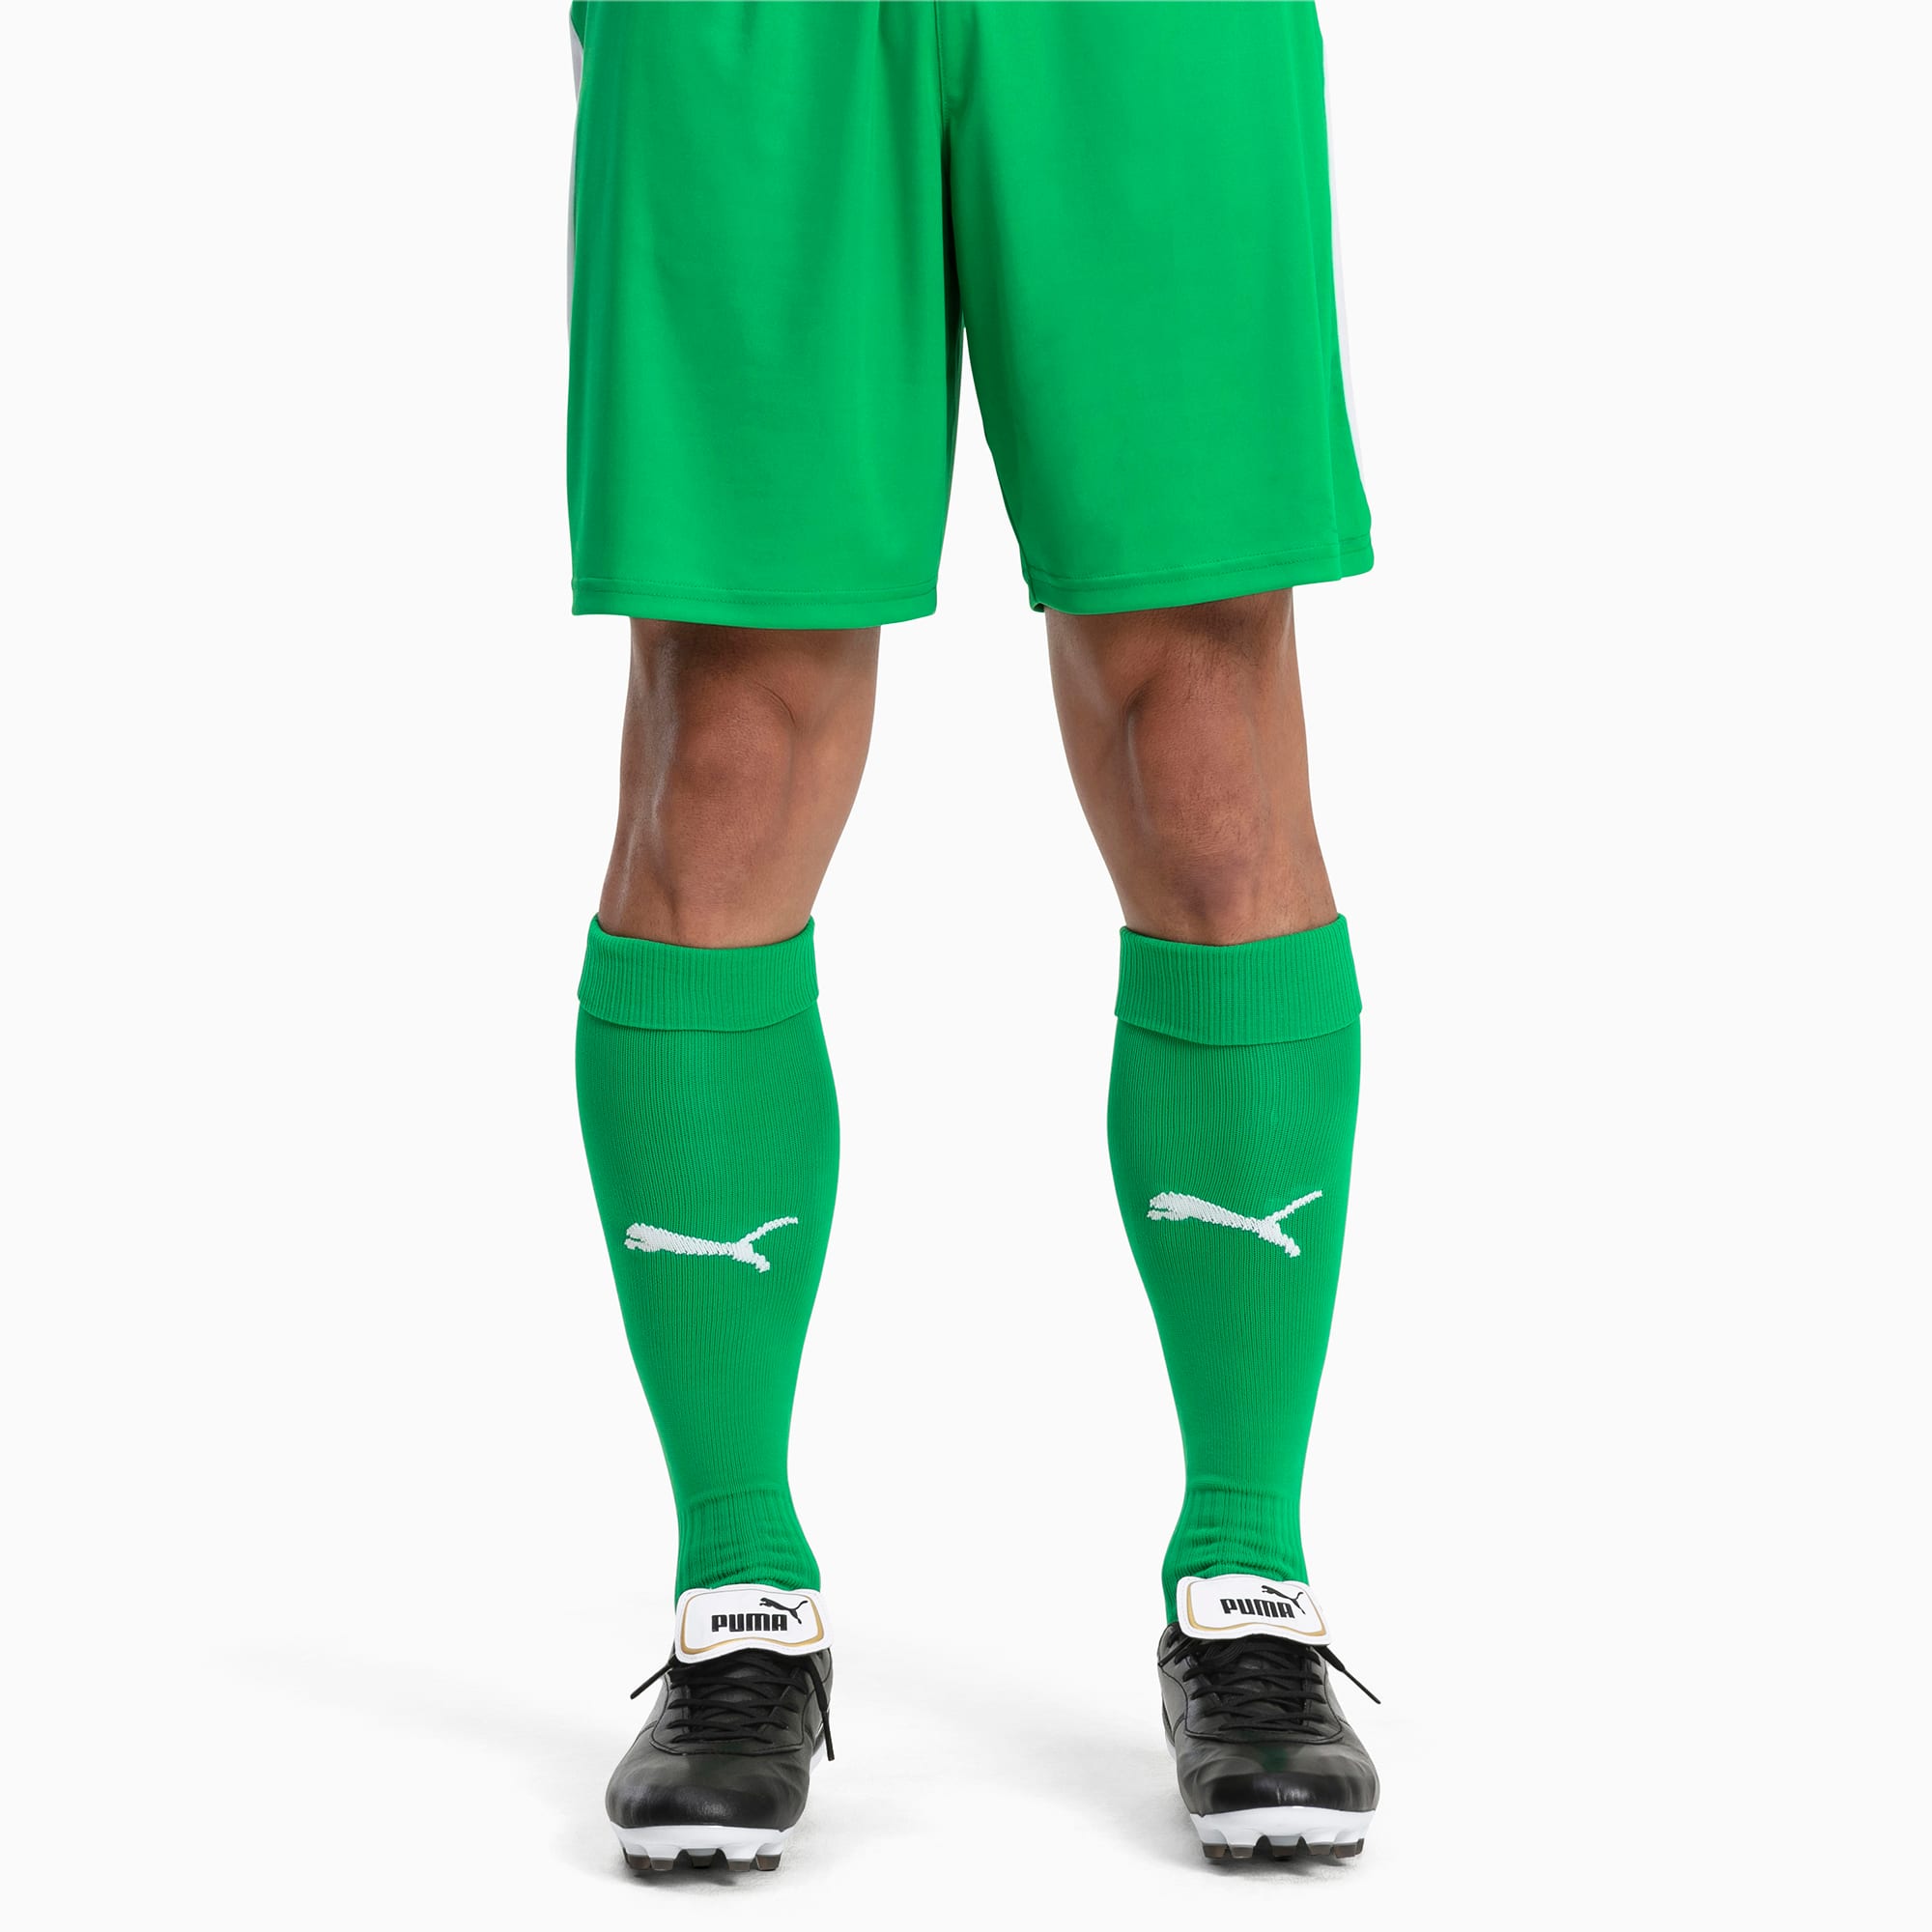 Image of PUMA Fußball Herren LIGA Core Socken | Mit Aucun | Grün/Weiß | Größe: 39-42